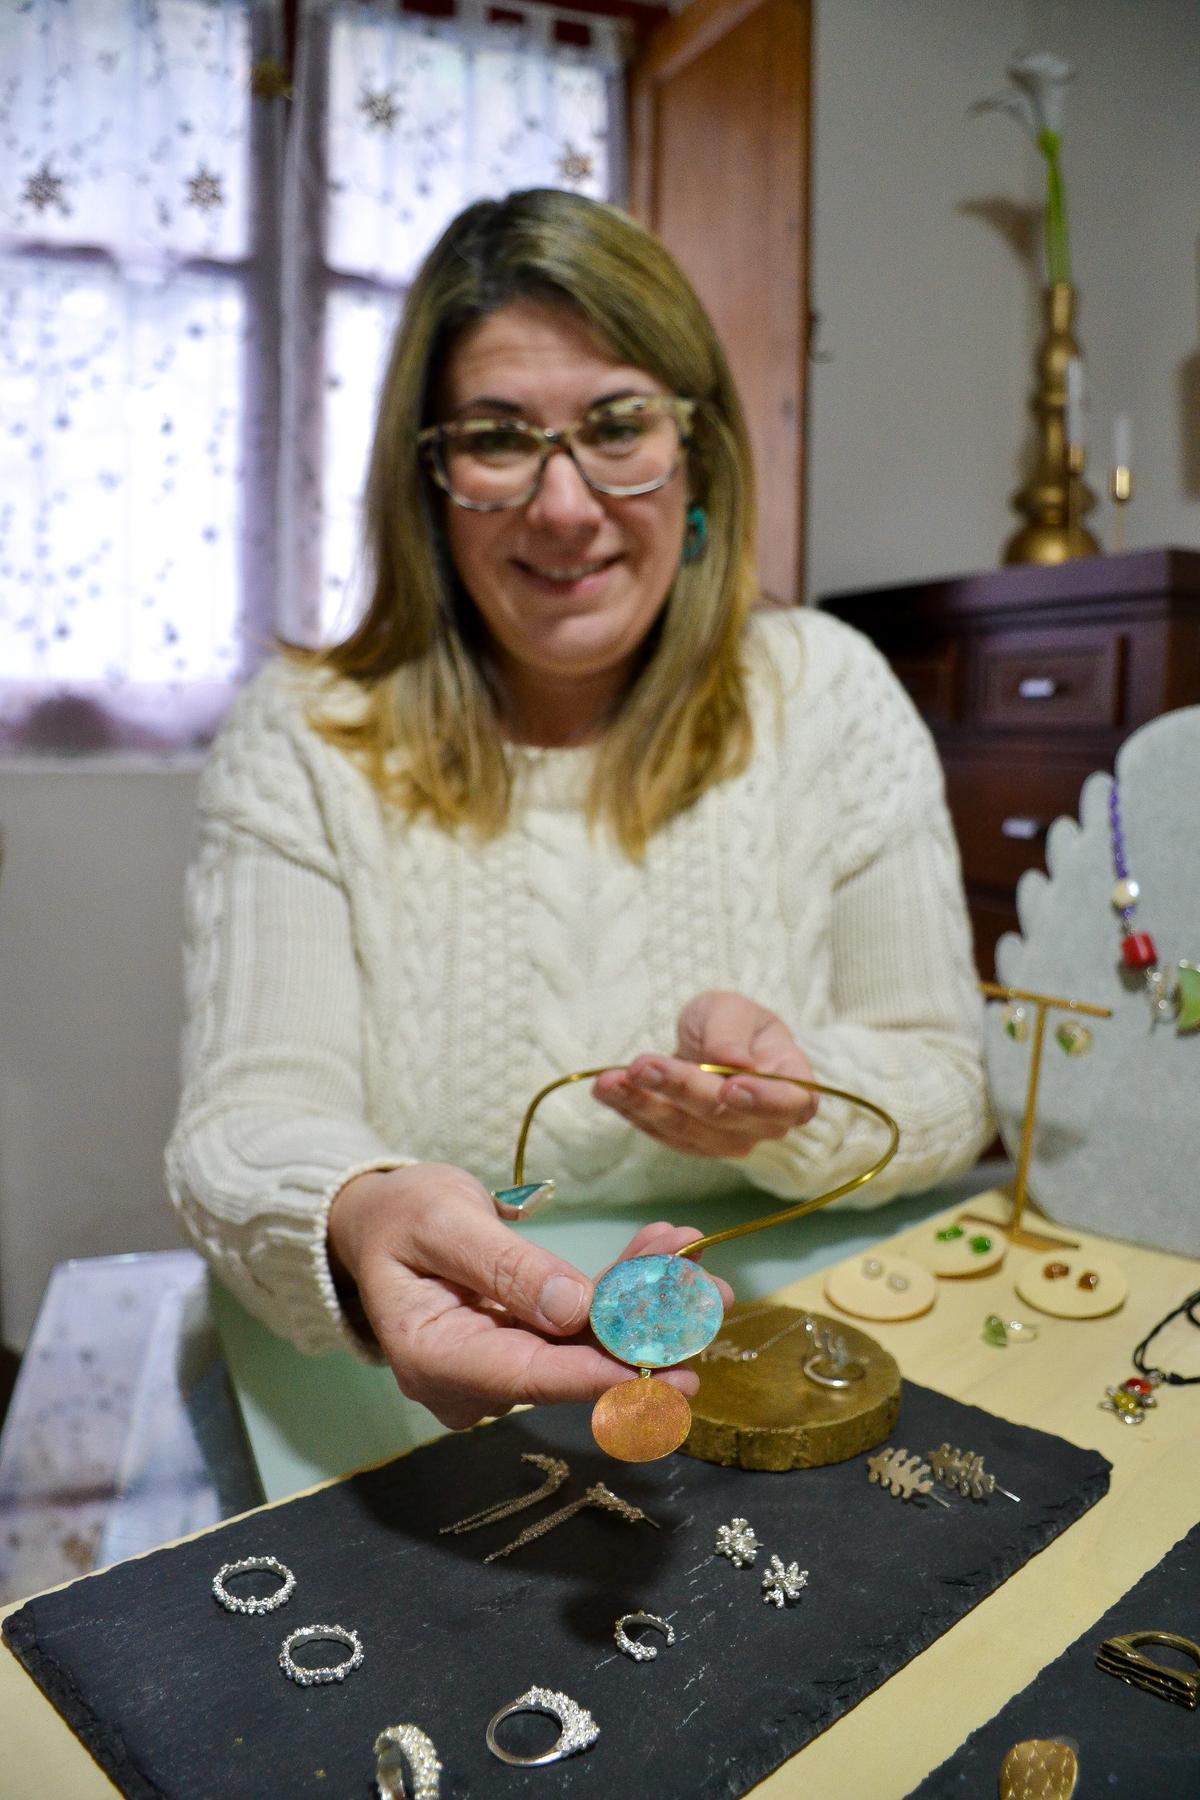 Cristina Fernández, que firma su trabajo como Lalita Estudio, muestra uno de sus trabajos.